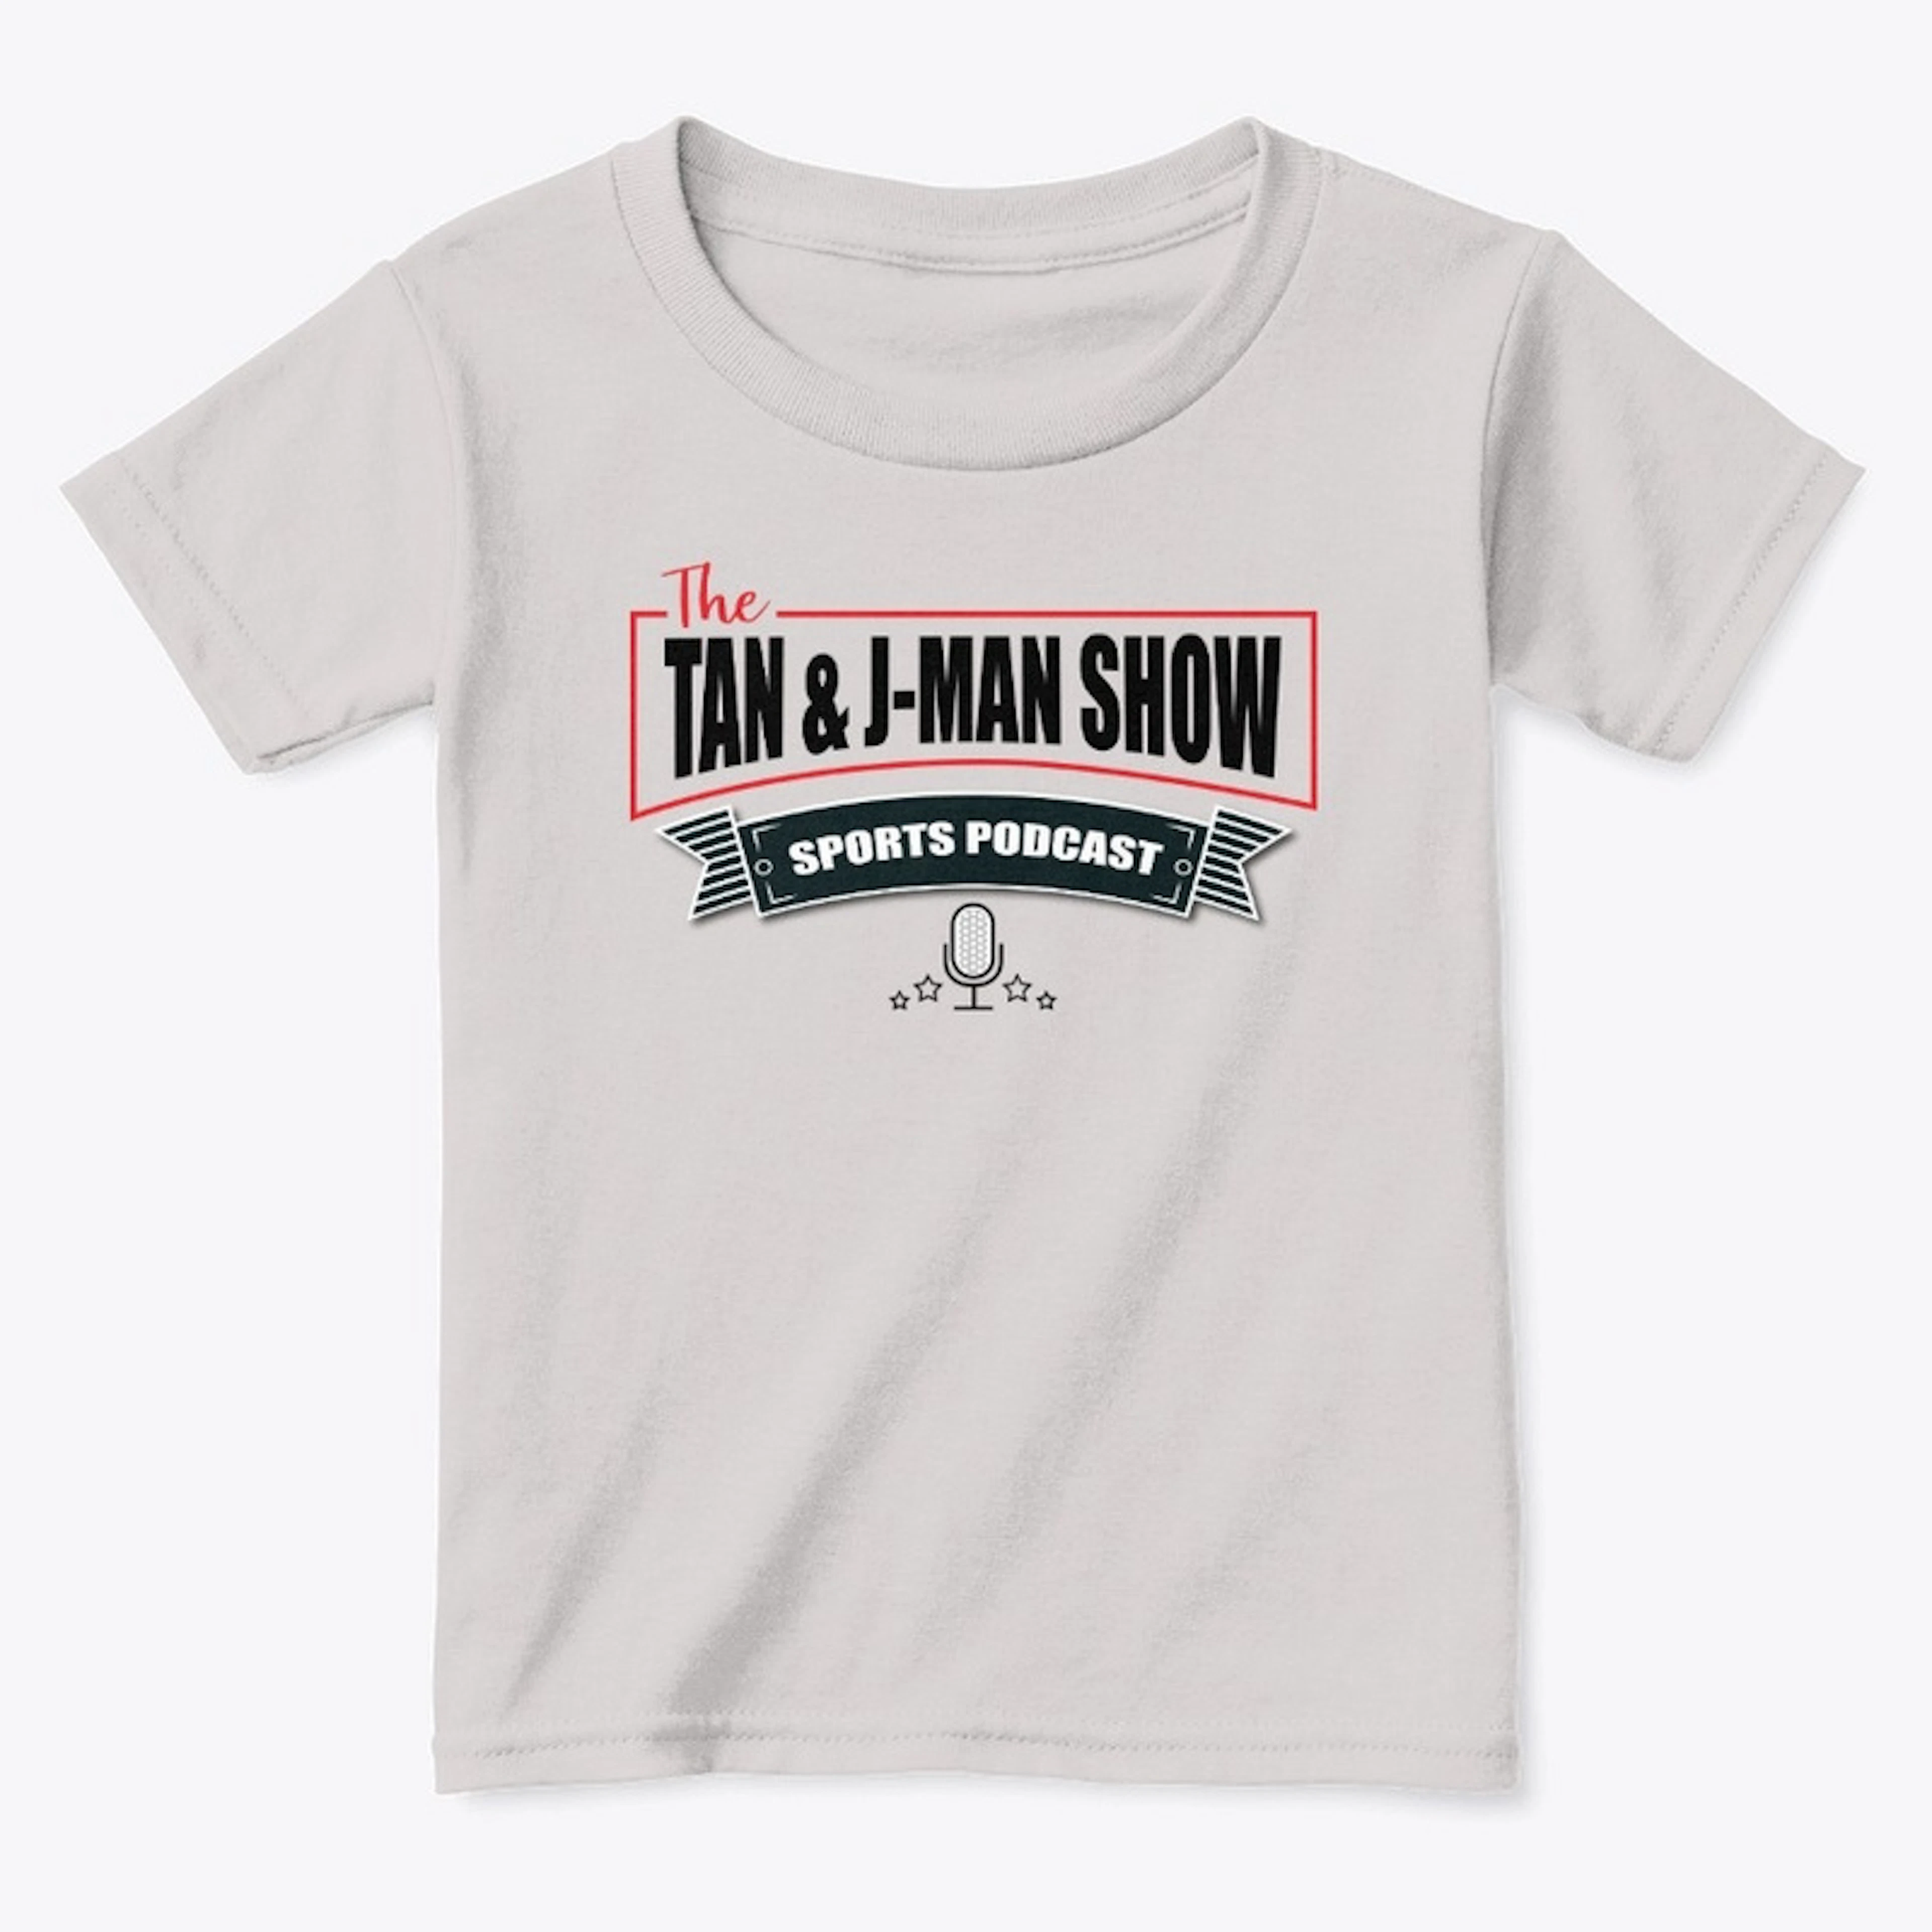 Tan and J-Man Show Toddler T-Shirt